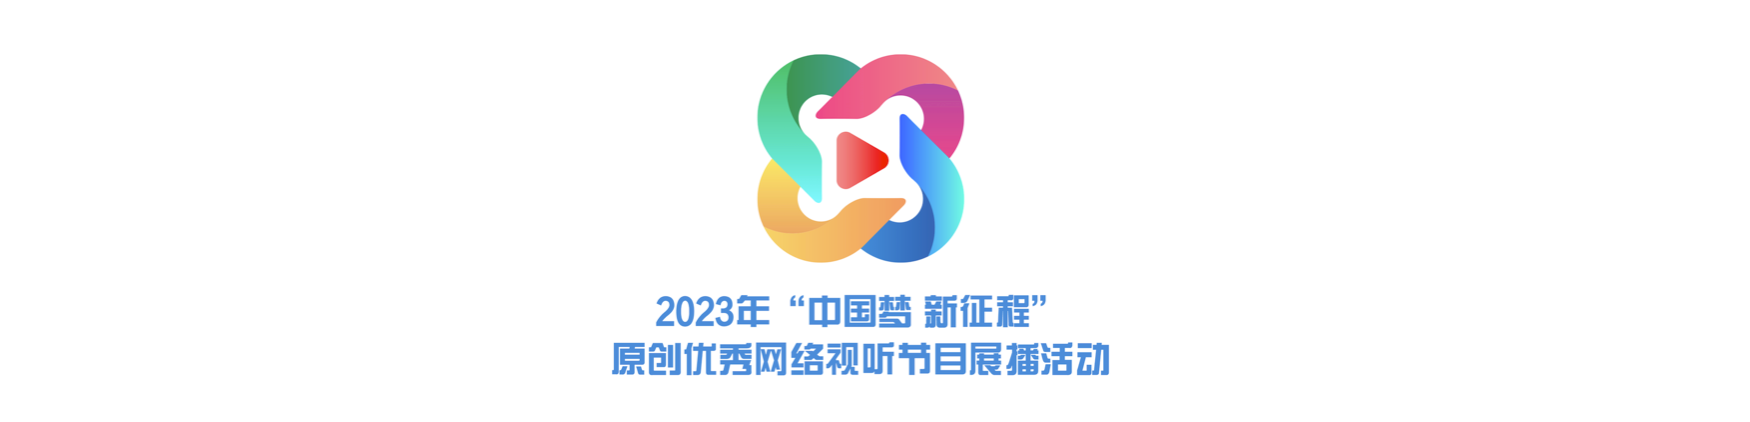 2023年“中国梦 新征程”原创优秀网络视听节目展播